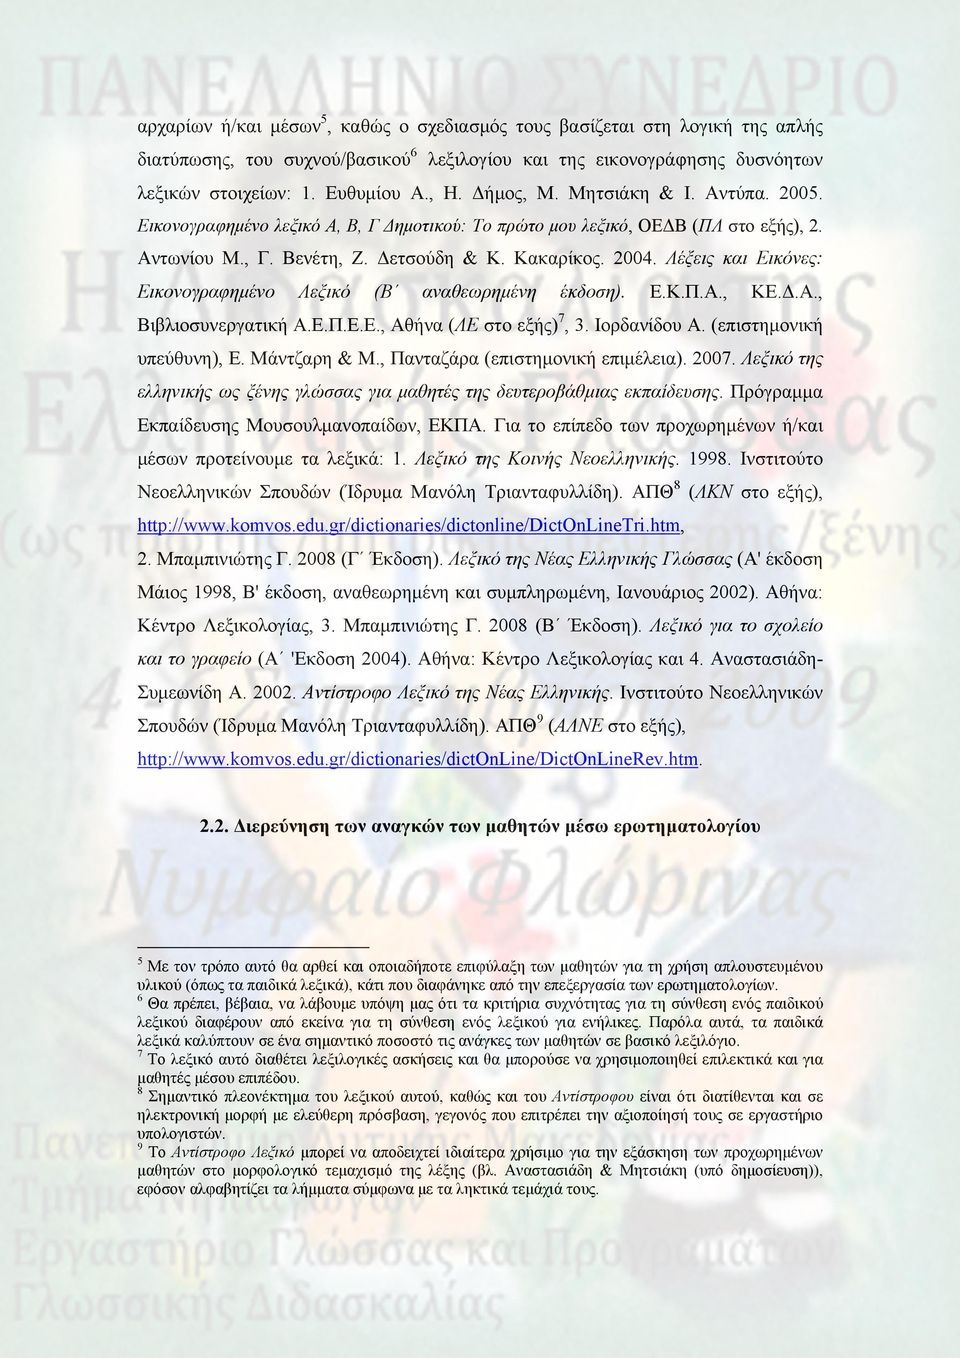 Λέξεις και Εικόνες: Εικονογραφημένο Λεξικό (Β αναθεωρημένη έκδοση). Ε.Κ.Π.Α., ΚΕ.Δ.Α., Βιβλιοσυνεργατική Α.Ε.Π.Ε.Ε., Αθήνα (ΛΕ στο εξής) 7, 3. Ιορδανίδου Α. (επιστημονική υπεύθυνη), Ε. Μάντζαρη & Μ.